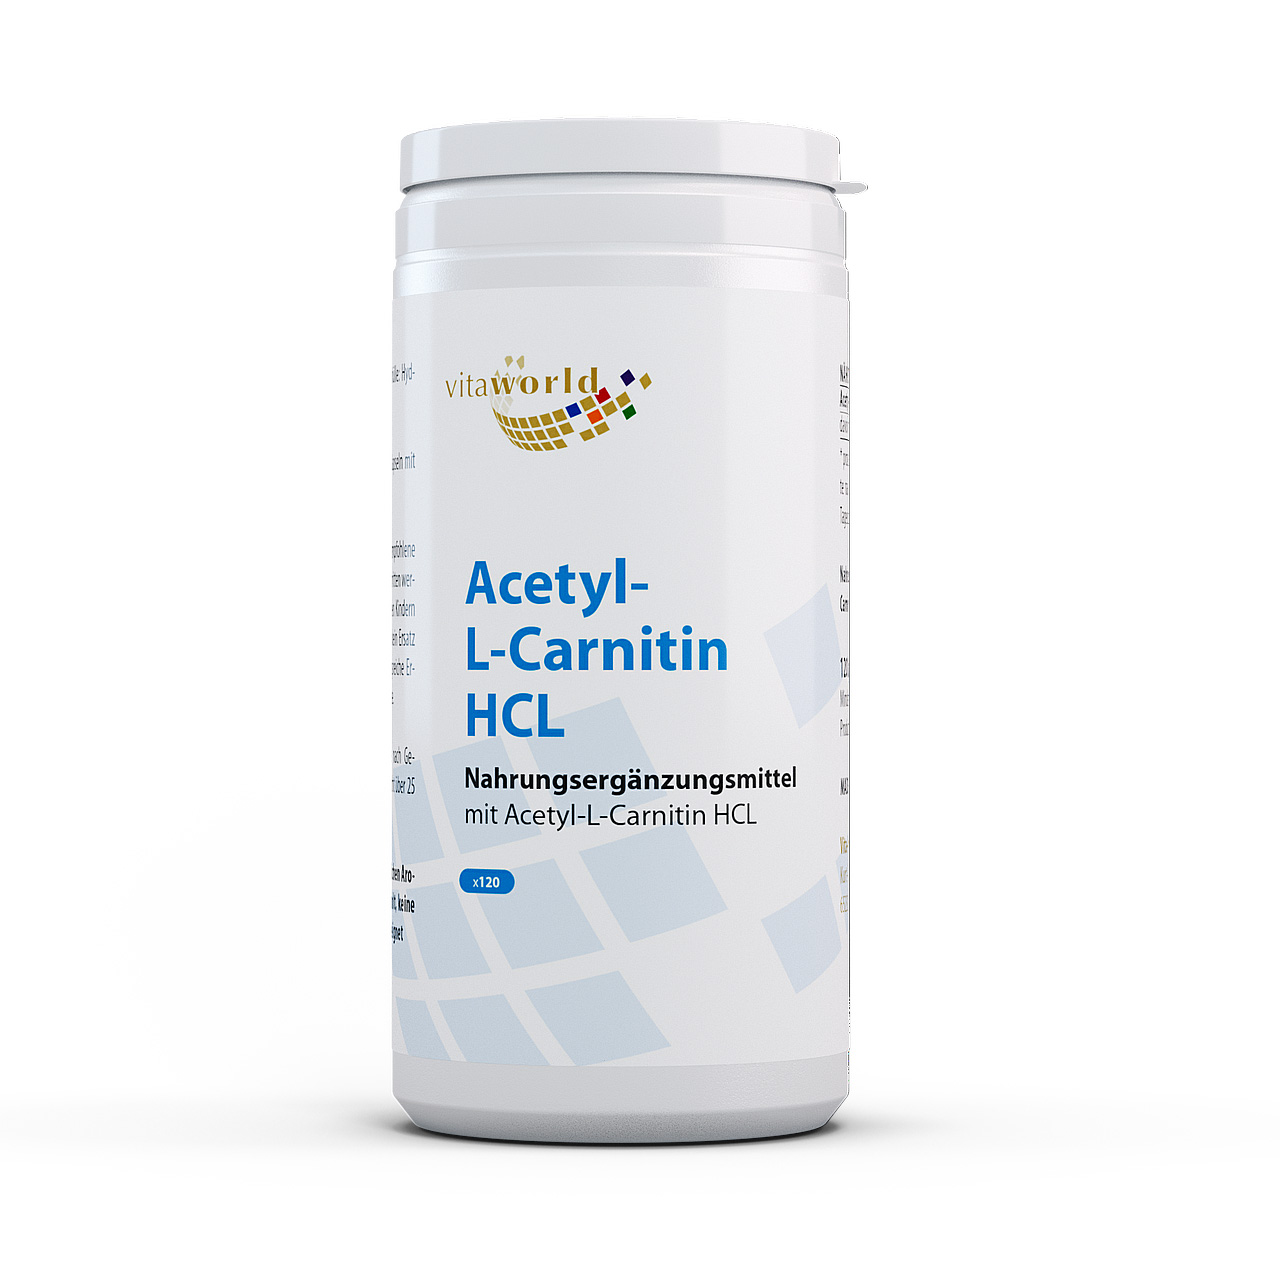 Vitaworld Acetyl-L-Carnitin HCL | Unterstützt Energie & Kognition - 110 bis 150 Zeichen für optimale Sichtbarkeit